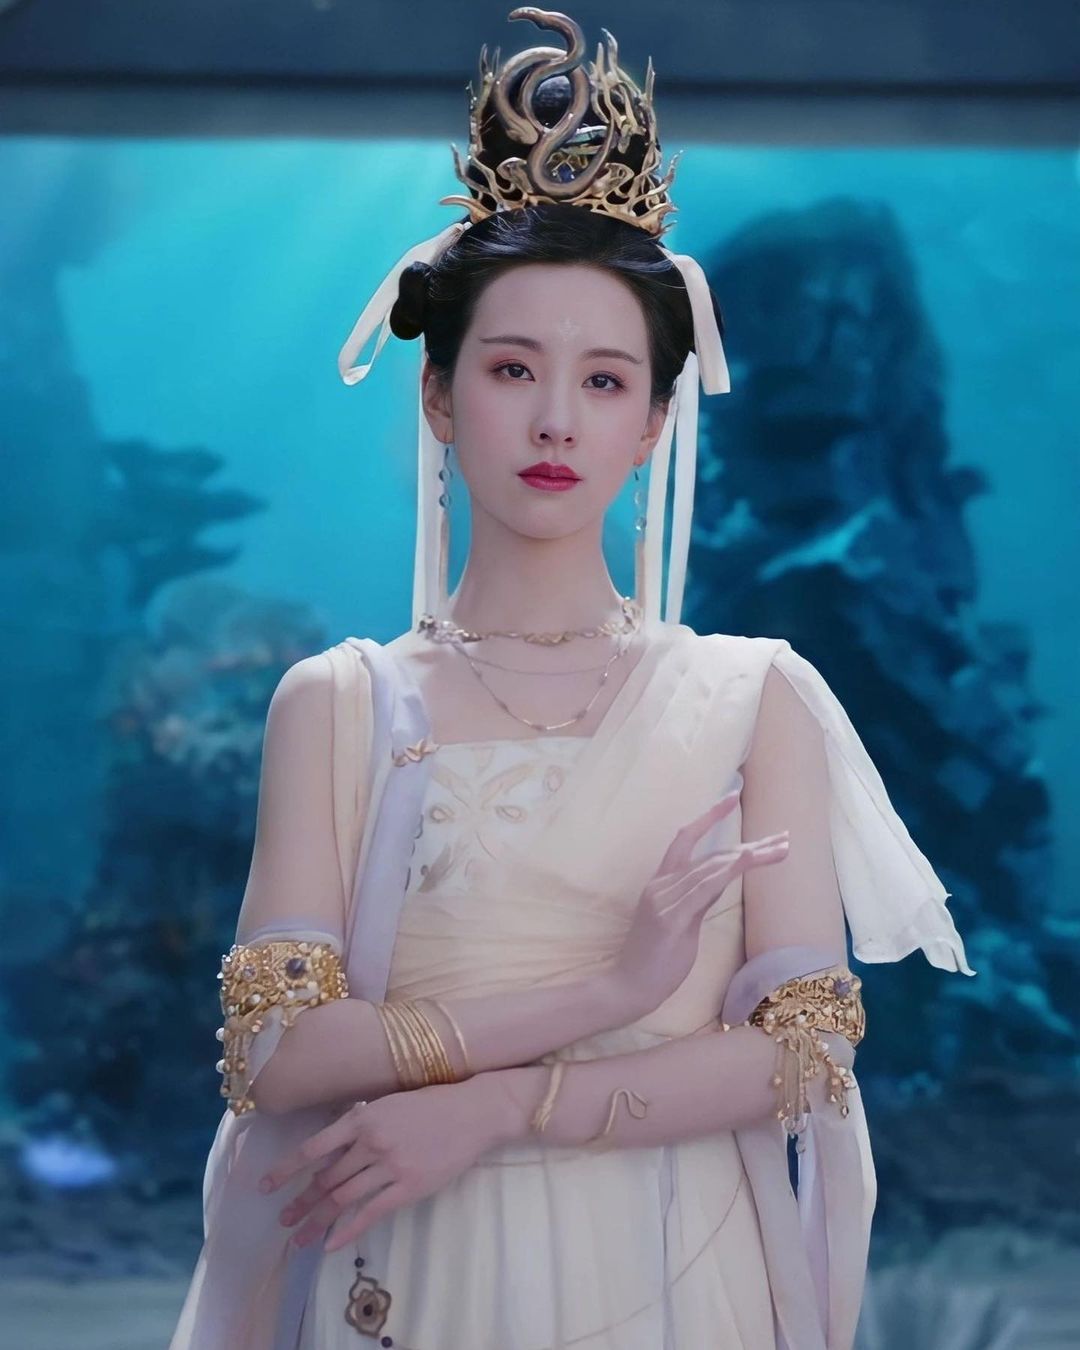 Nhan sắc không tì vết của Trần Đô Linh khi chưa qua chỉnh sửa trong buổi ra mắt phim mới - Ảnh 3